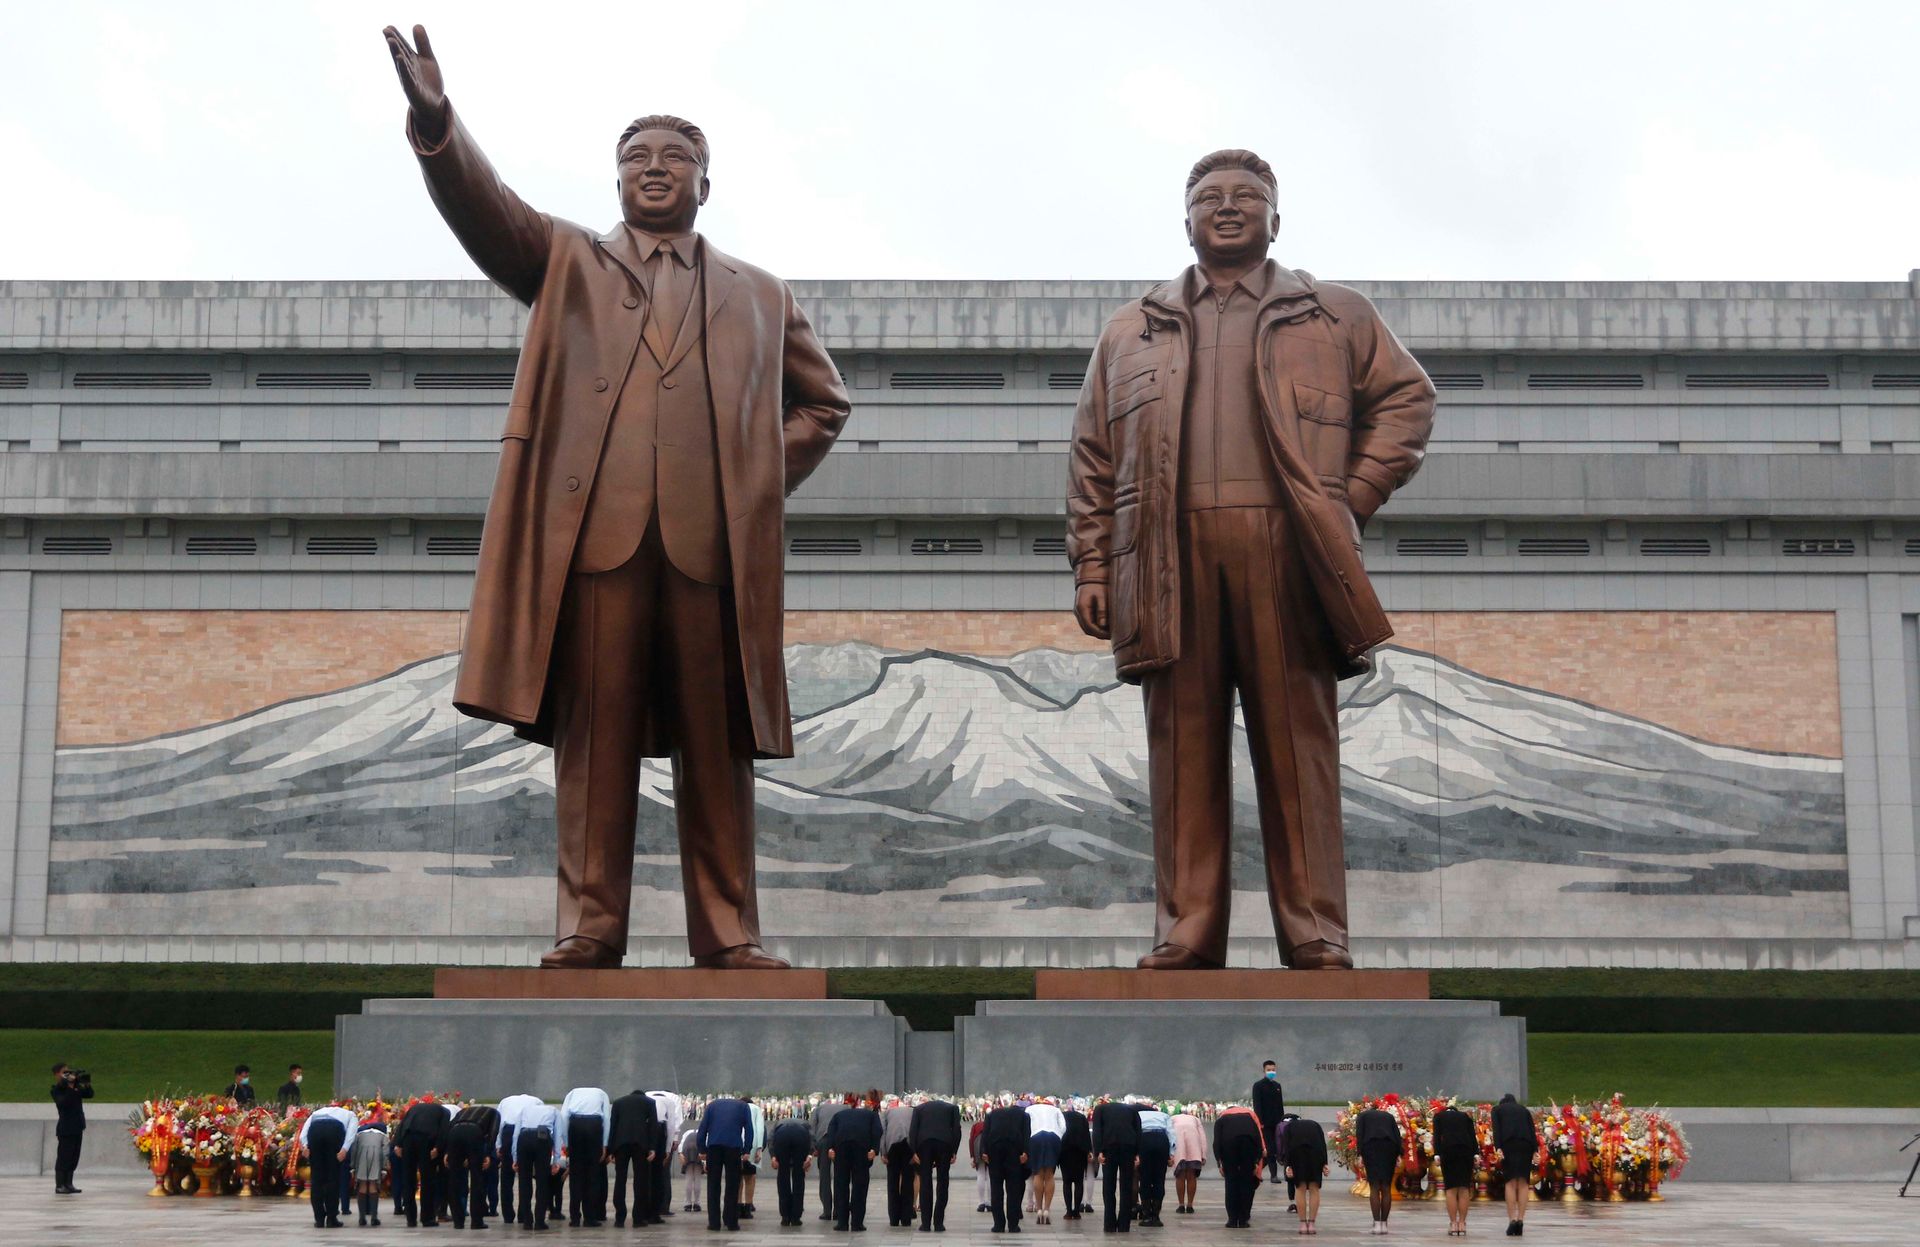 Mange folk bukker foran to statuer i bronse av to menn.